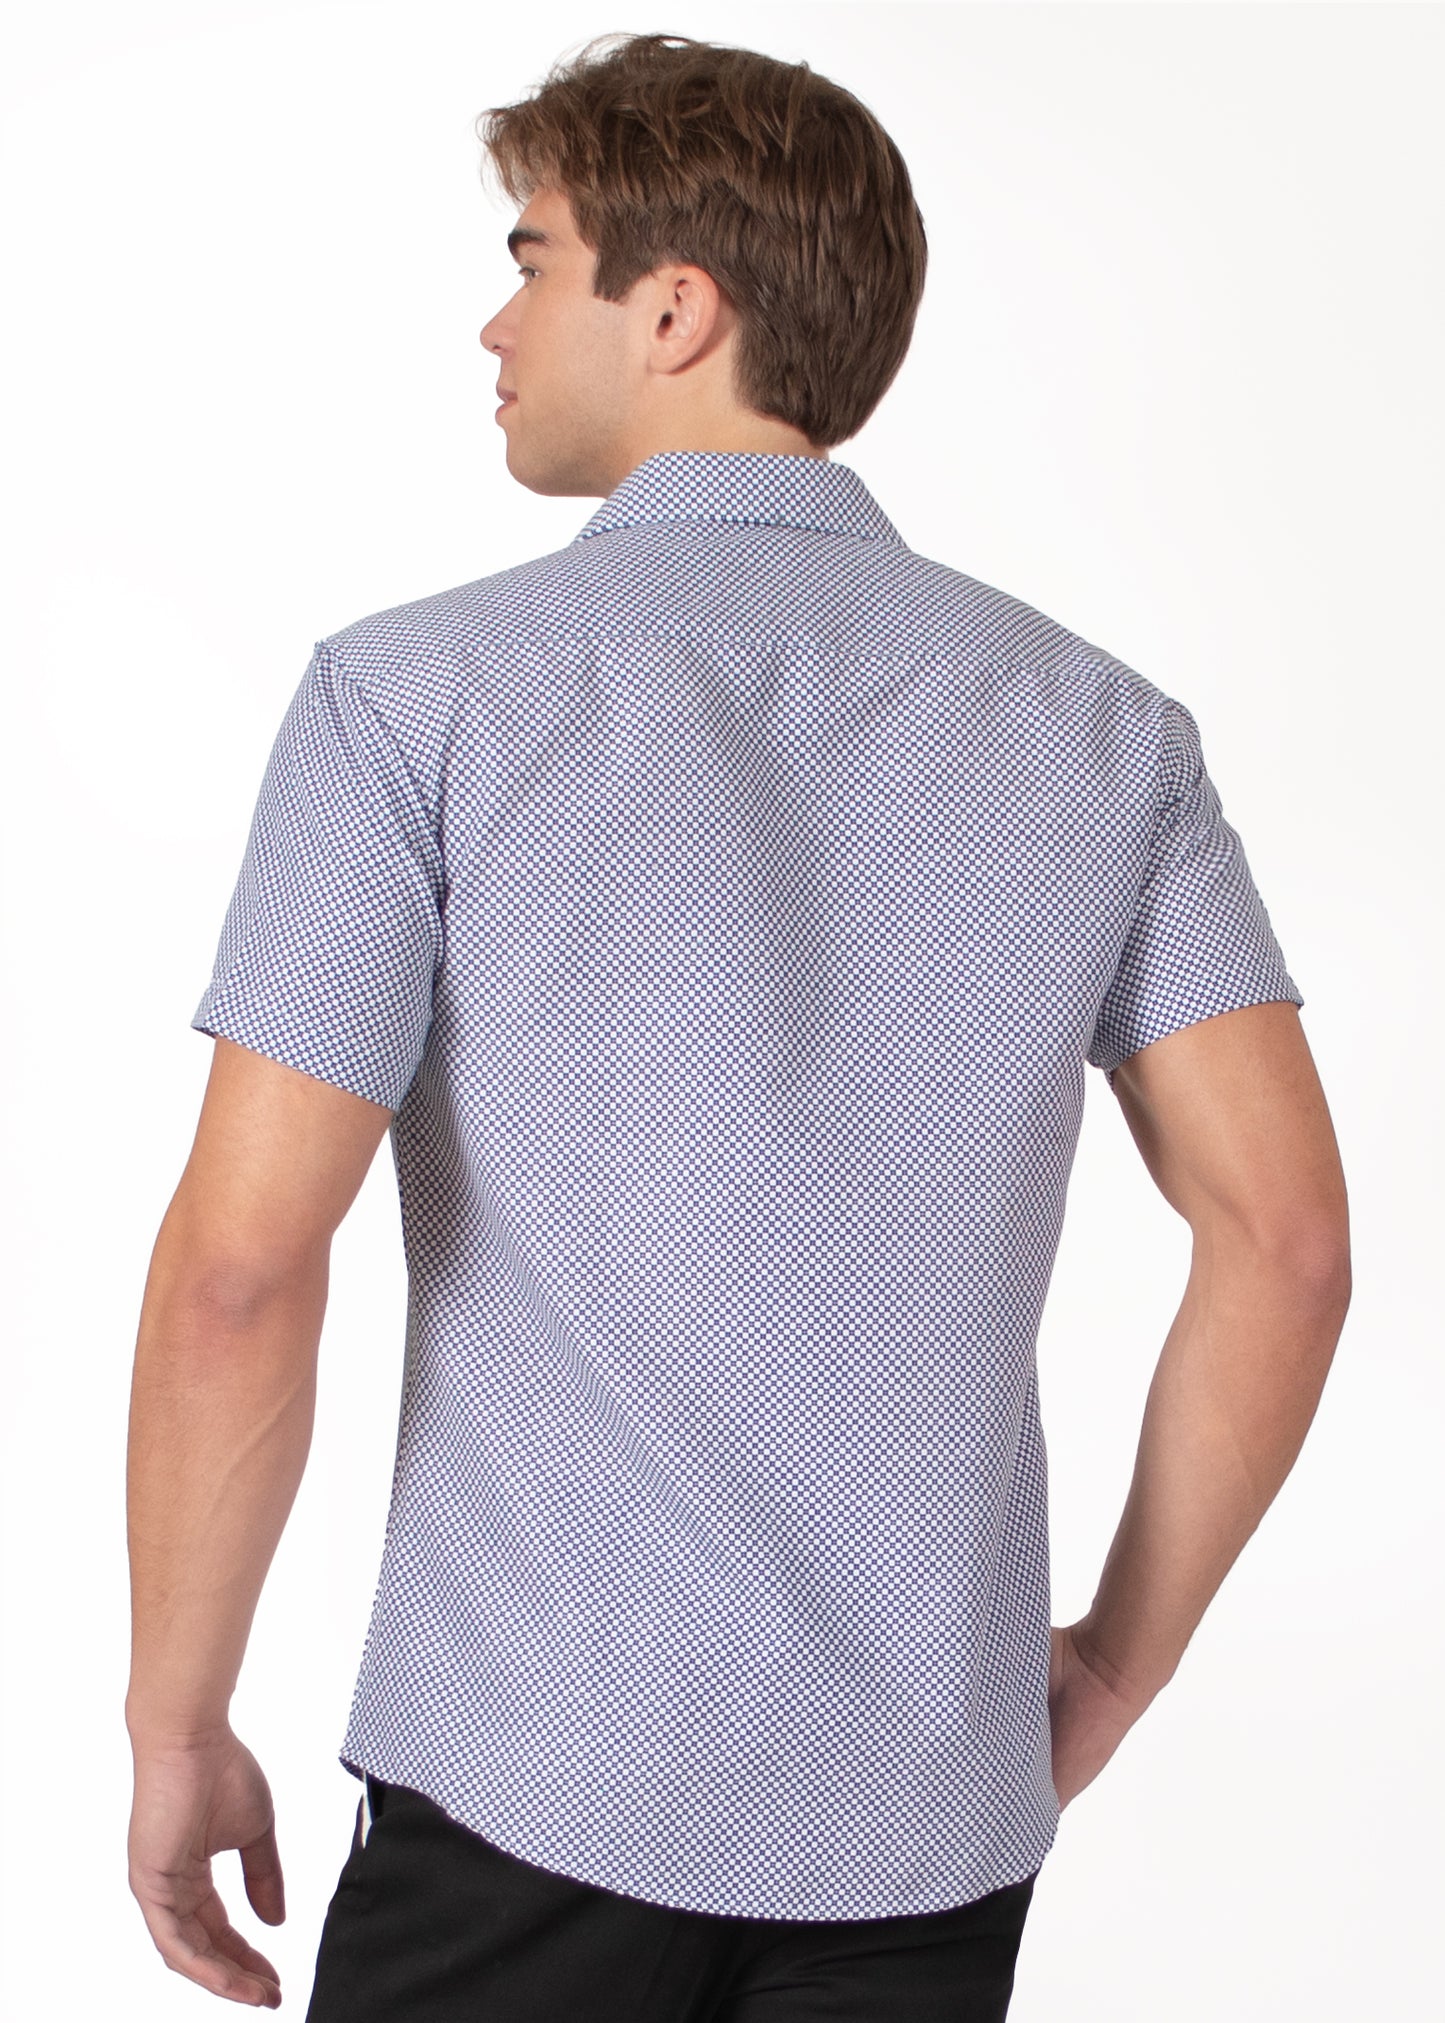 'Dot Dash' Short Sleeve Shirt